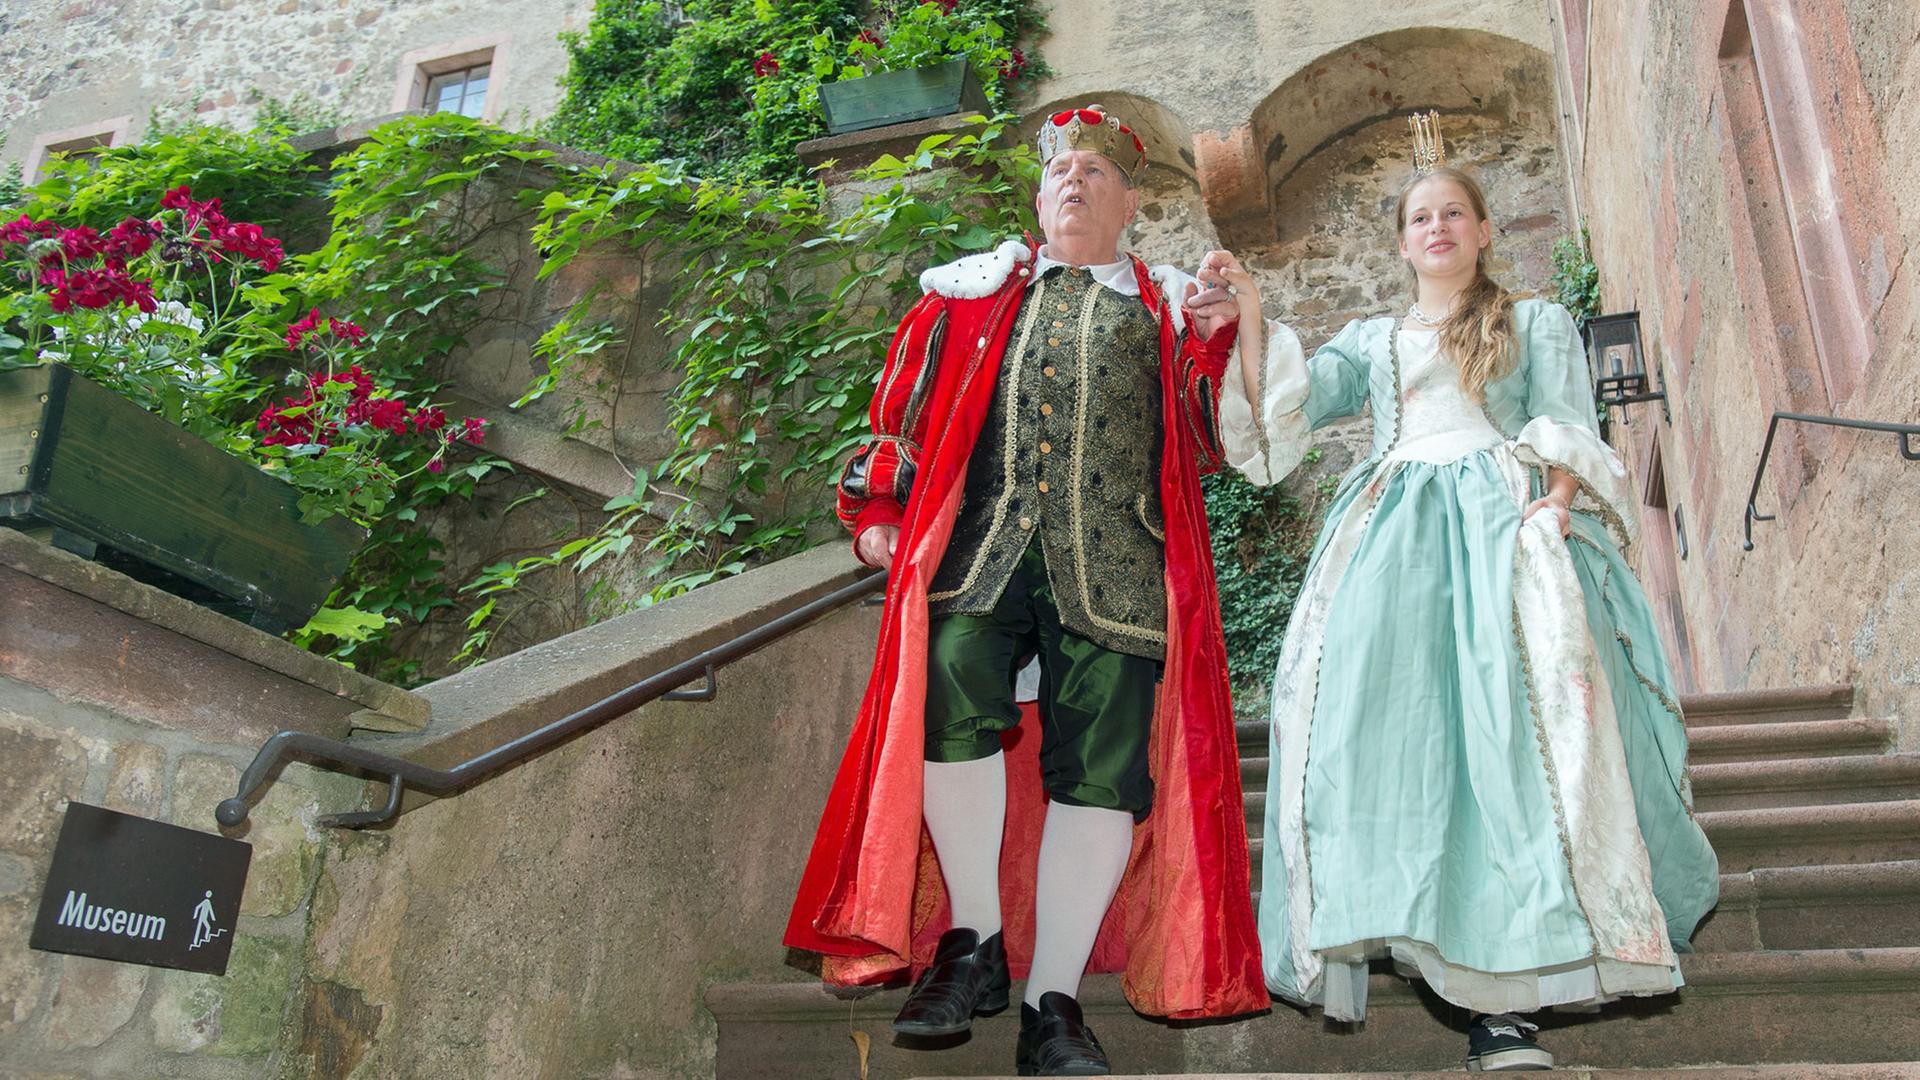 König Norbert I. (l., Norbert Hein) und seine Prinzessin Viktoria (Victoria Rennert) spielen in dem Stück "Burg der Märchen" zur Kostümprobe am 30.06.2015 auf der Burg Kriebstein in Kriebstein (Sachsen).